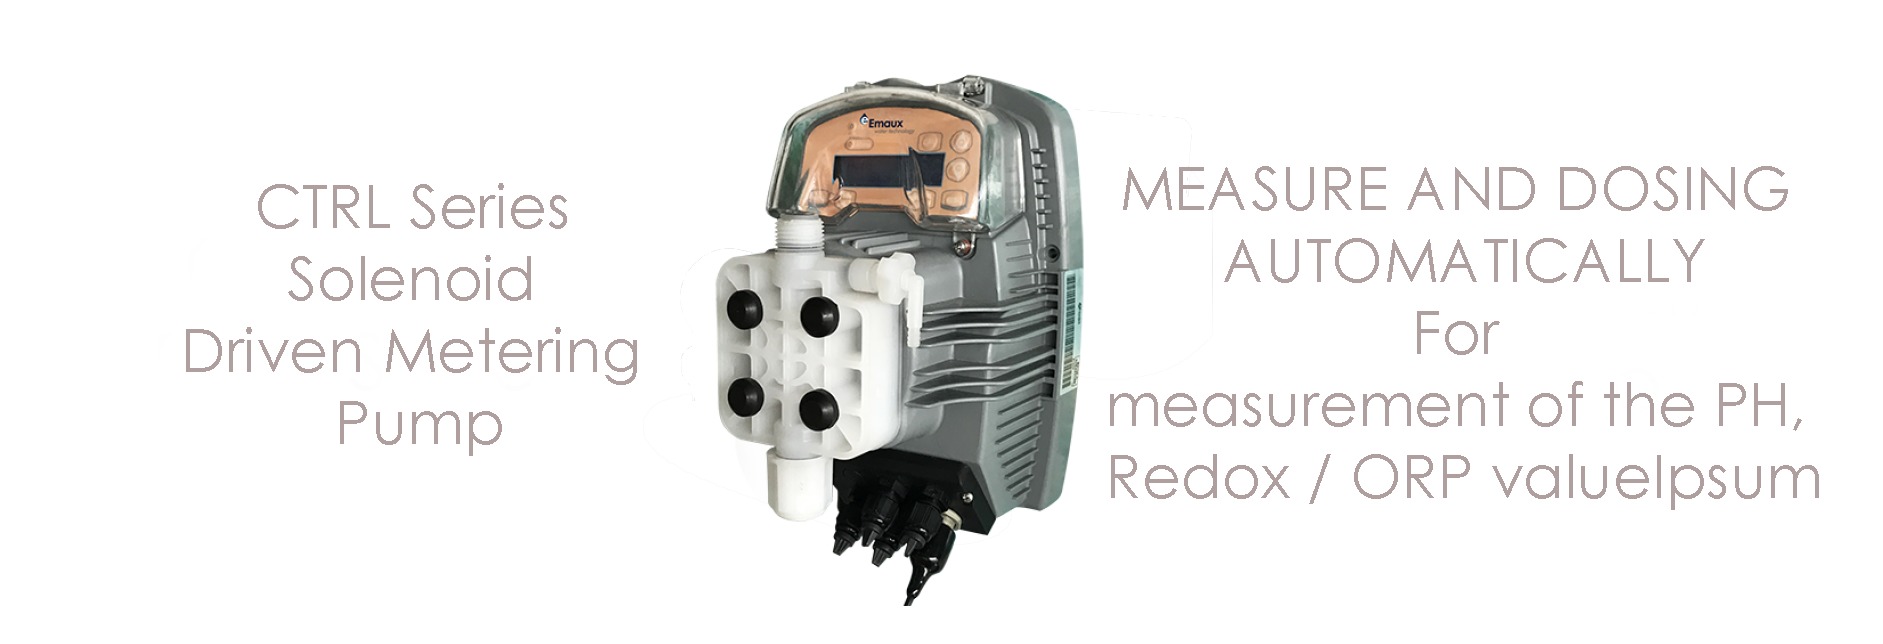 CTRL Series Solenoid Driven Metering Pump